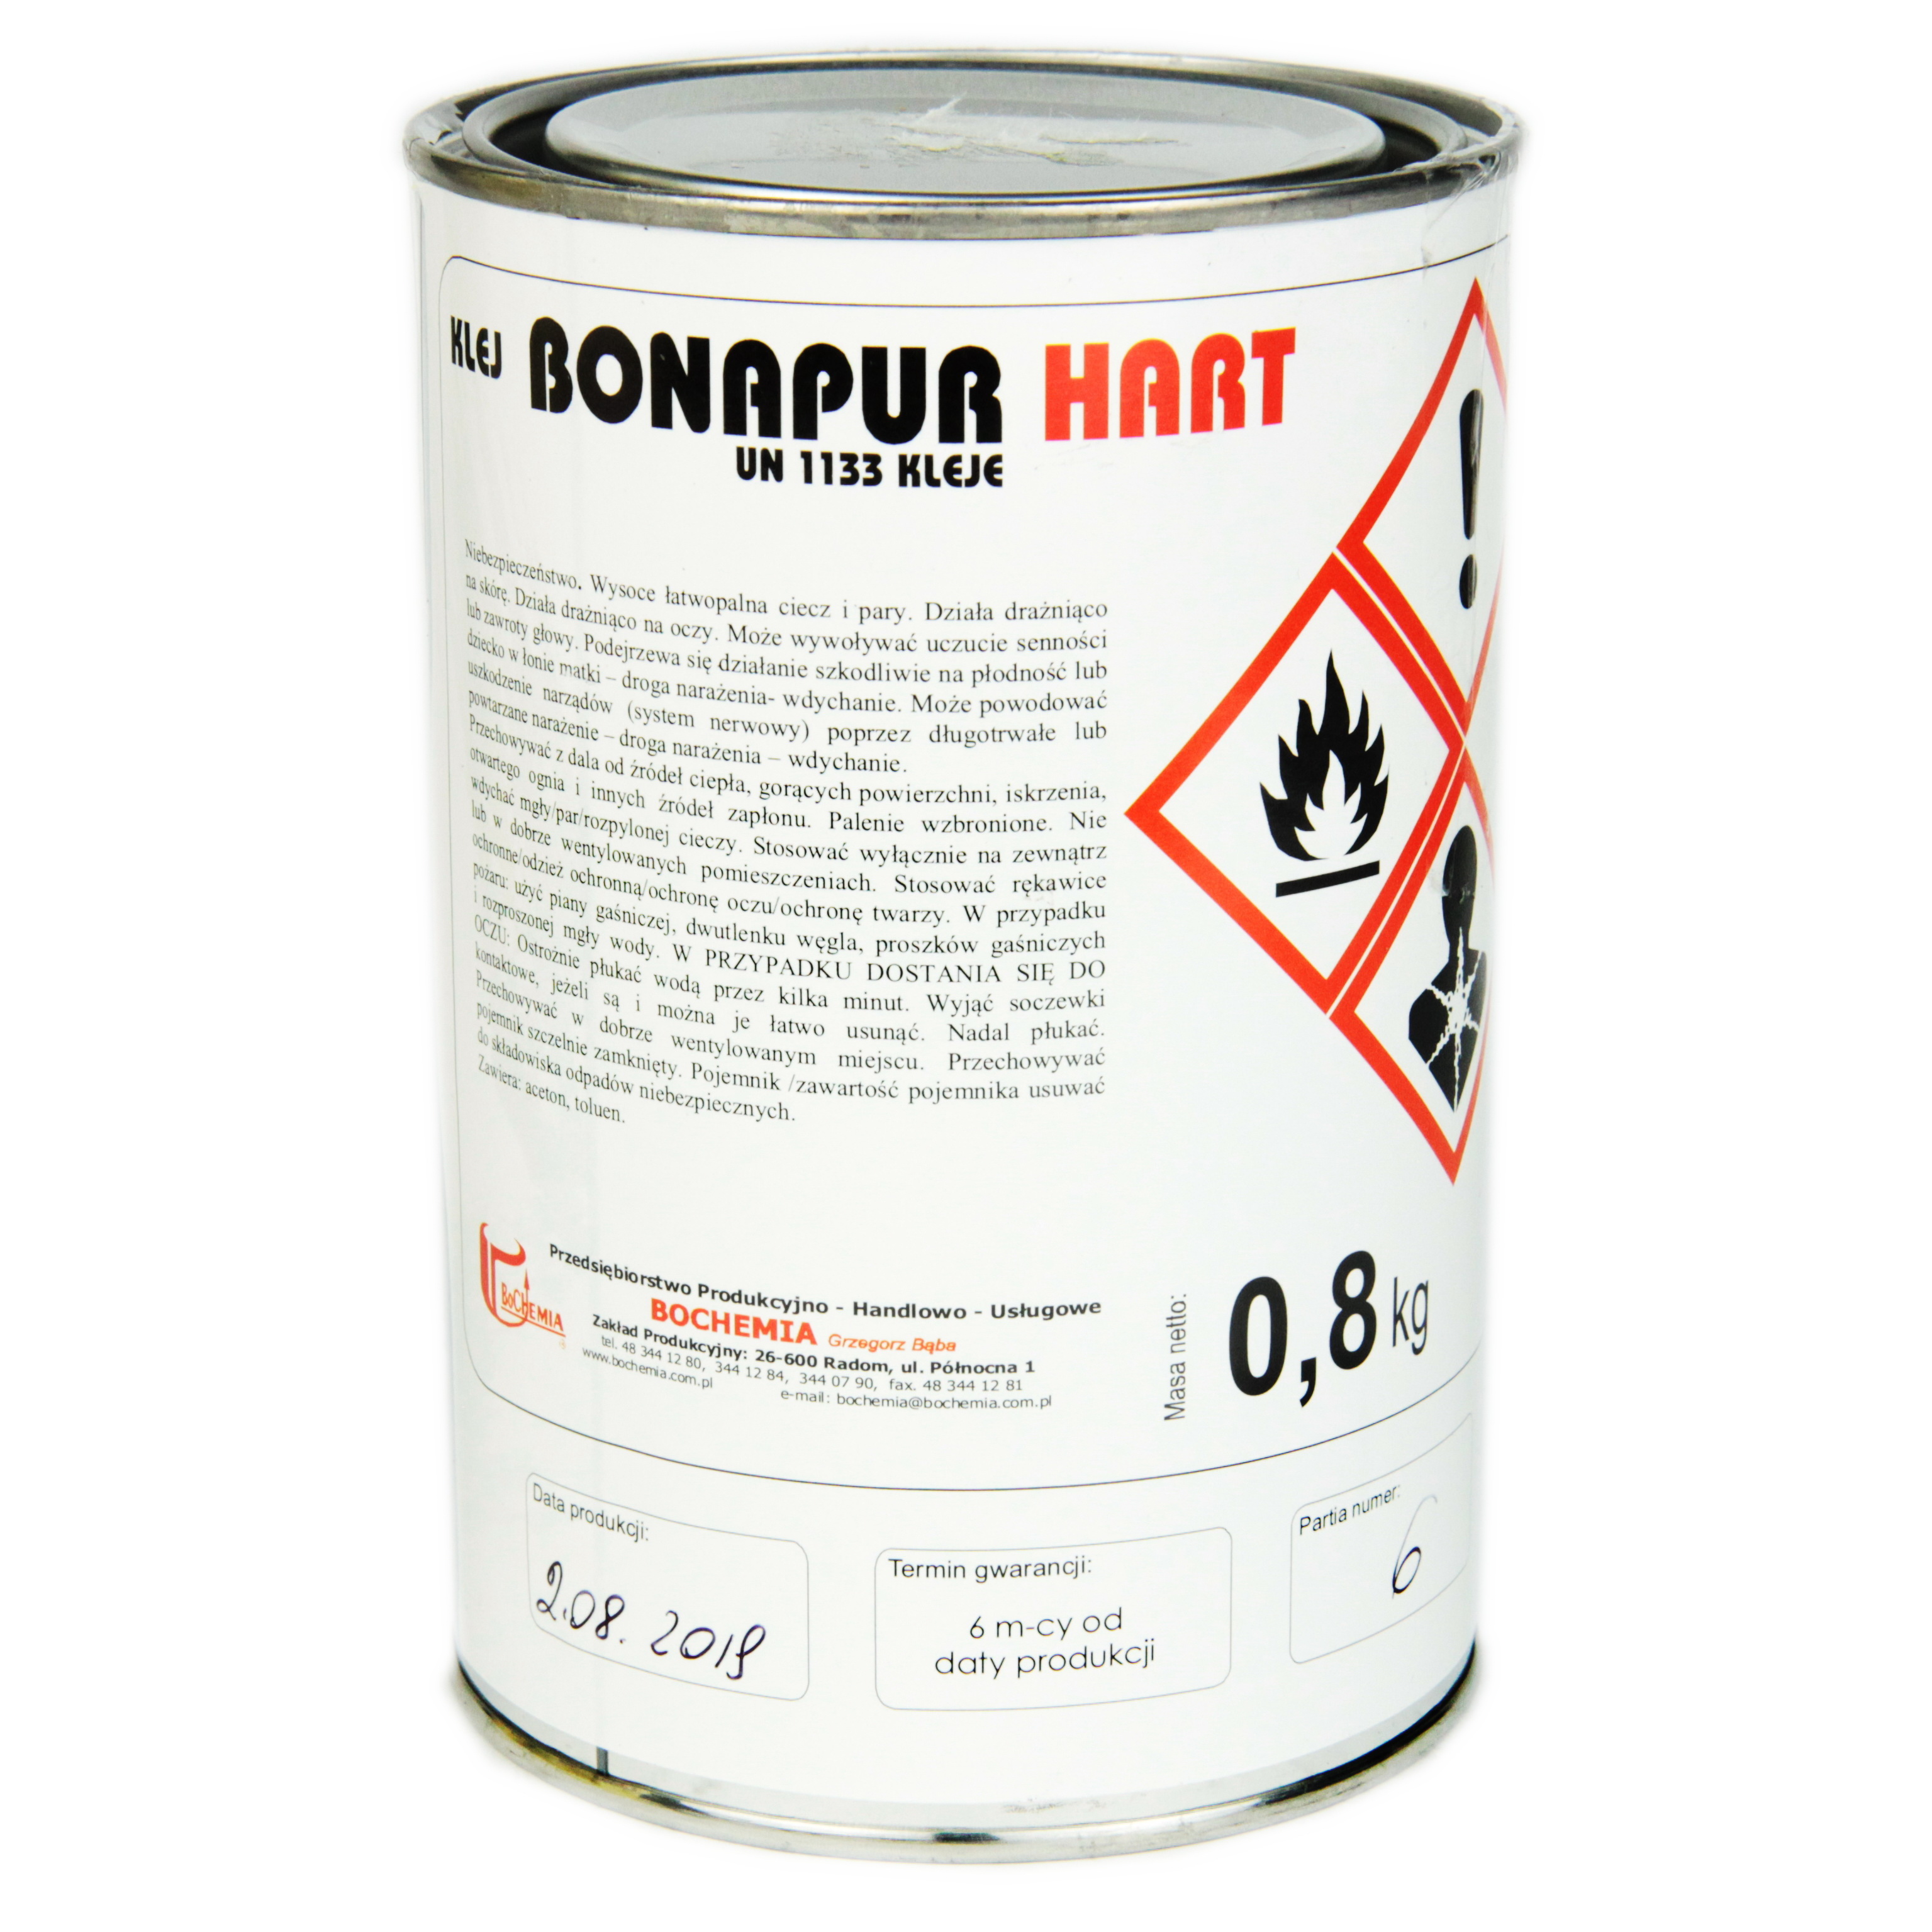 Полиуретановый термостойкий клей BONAPUR HART для кожзама, тканей, пвх, синтетической кожи, Польша детальная фотка